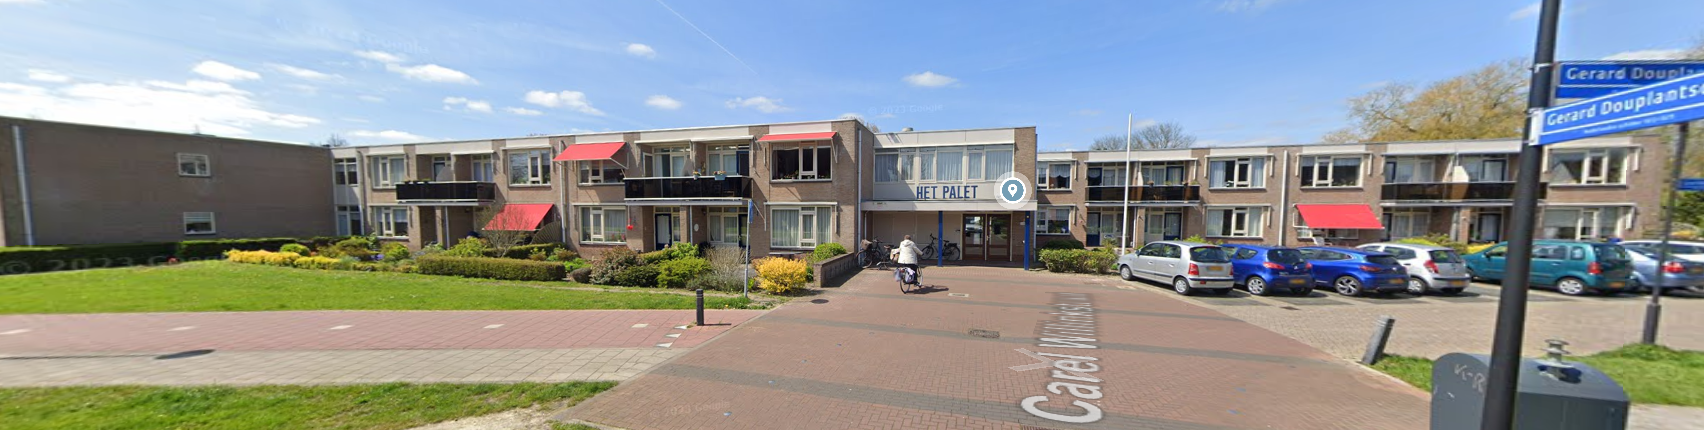 Carel Willinkstraat 47, 1701 JZ Heerhugowaard, Nederland